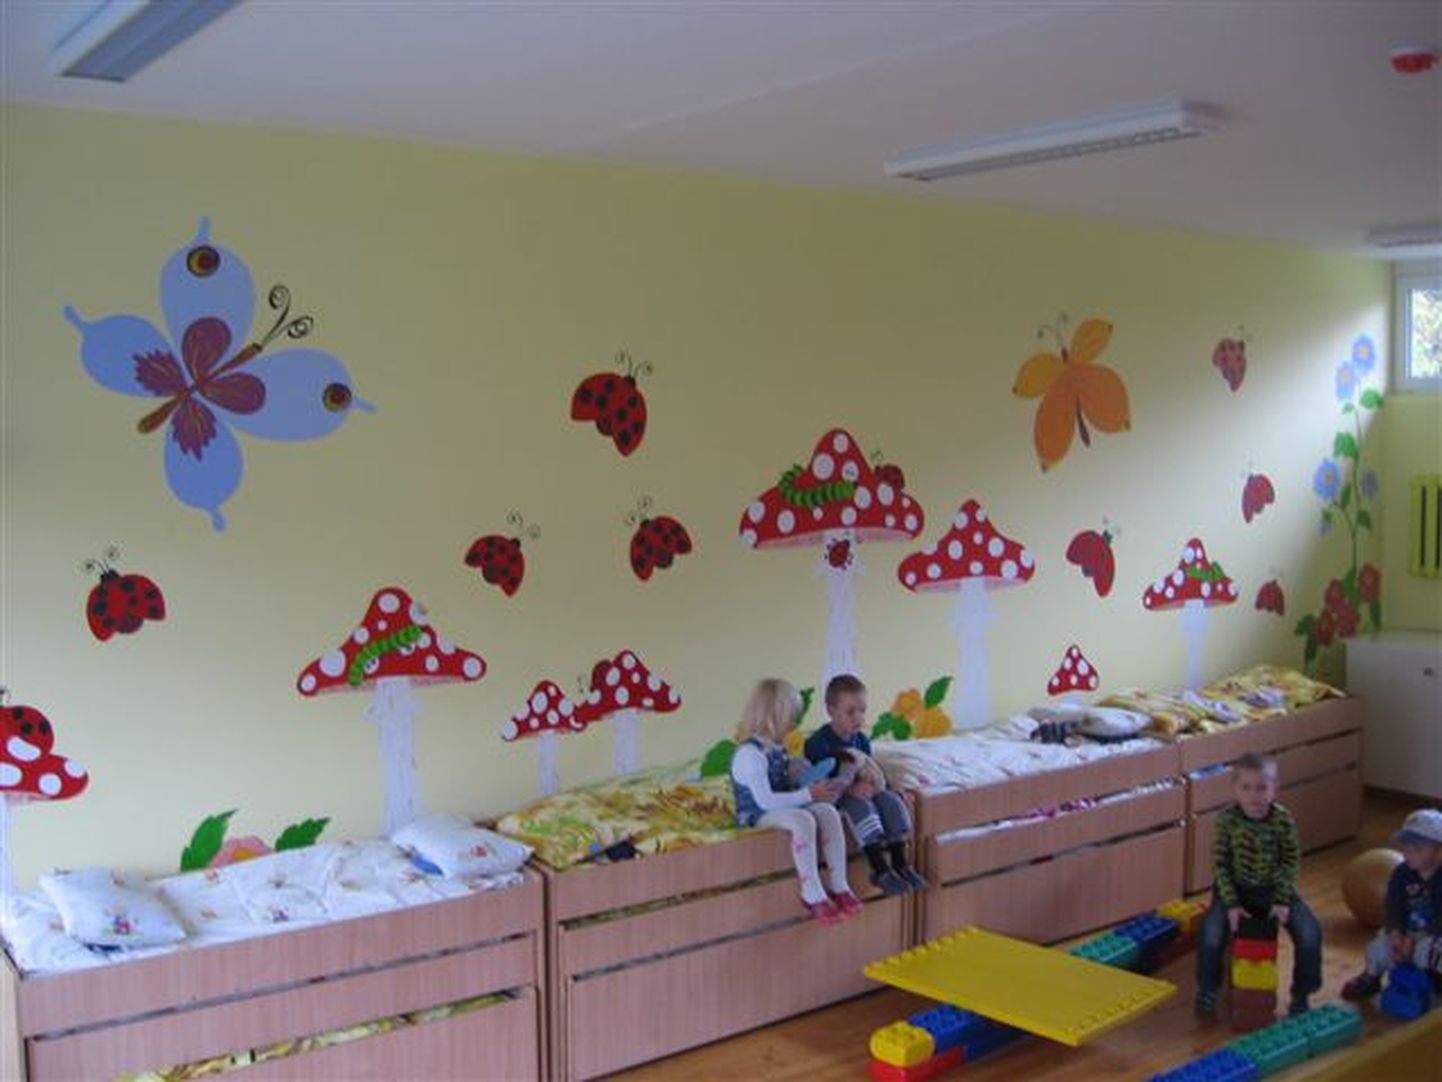 Lapsevanem Helin Mattisen kujundas sõimelaste rühma magamistoa seina.